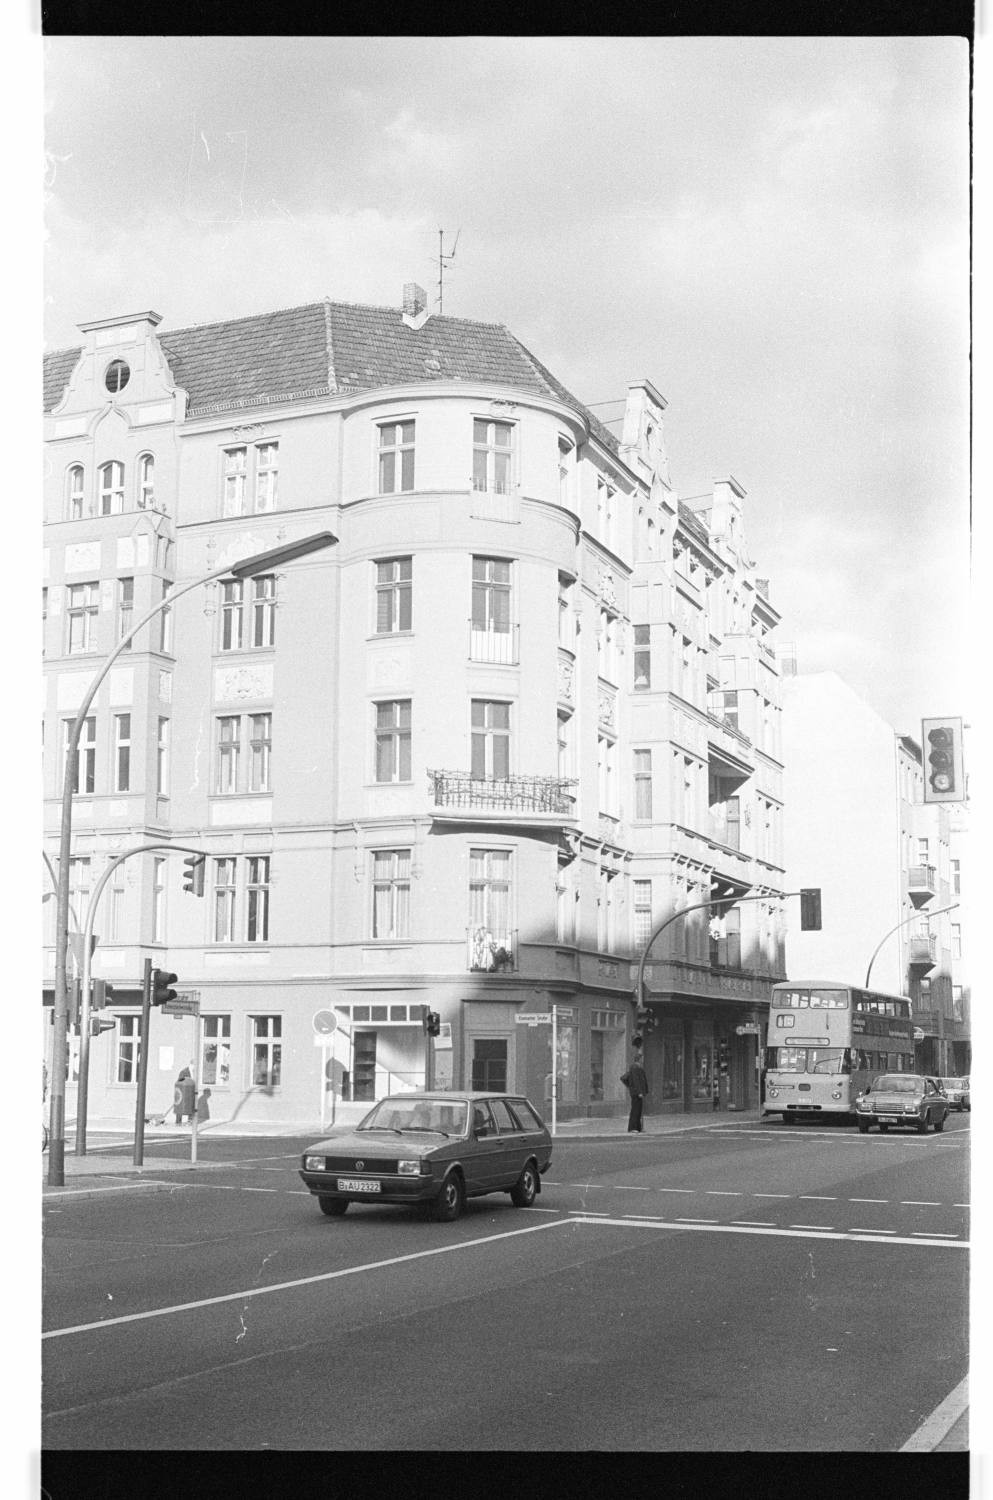 Kleinbildnegative: Mietshaus, Eisenacher Str. 102, 1979 (Museen Tempelhof-Schöneberg/Jürgen Henschel RR-F)